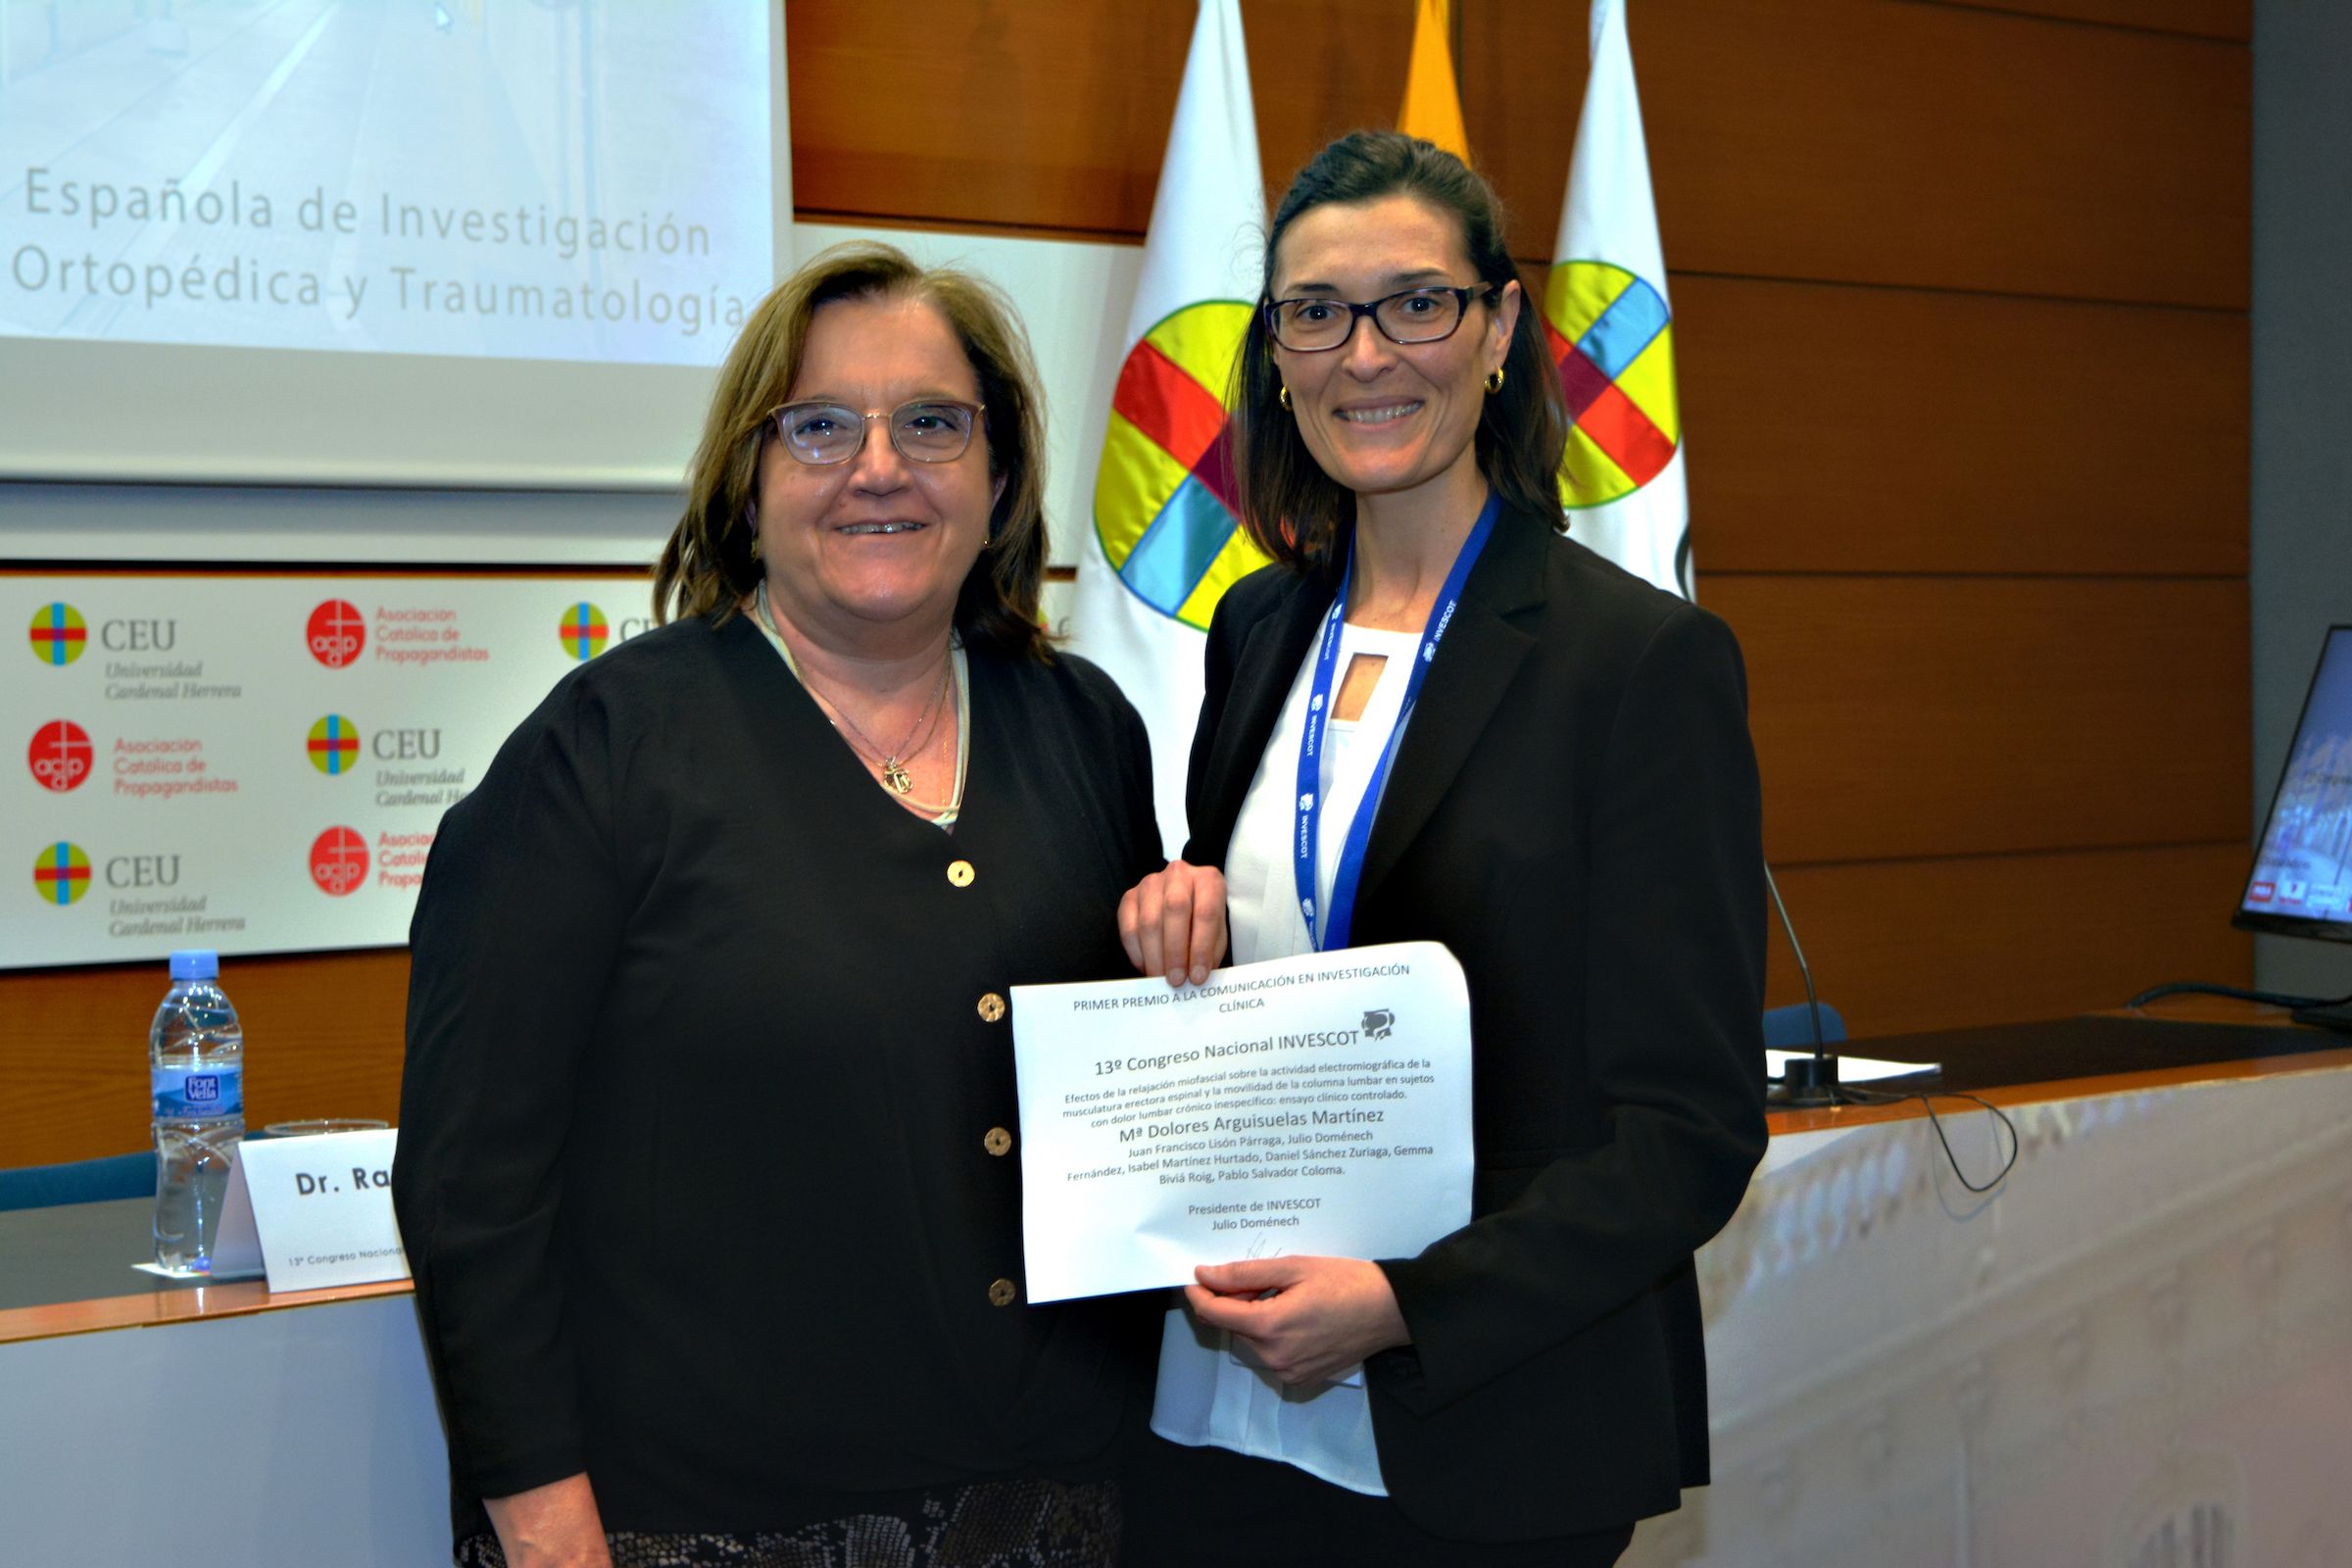 La la directora científica del XIII Congreso INVESCOT, María José Sangüesa, entrega el premio a la profesora de la CEU UCH María Dolores Arguisuelas.